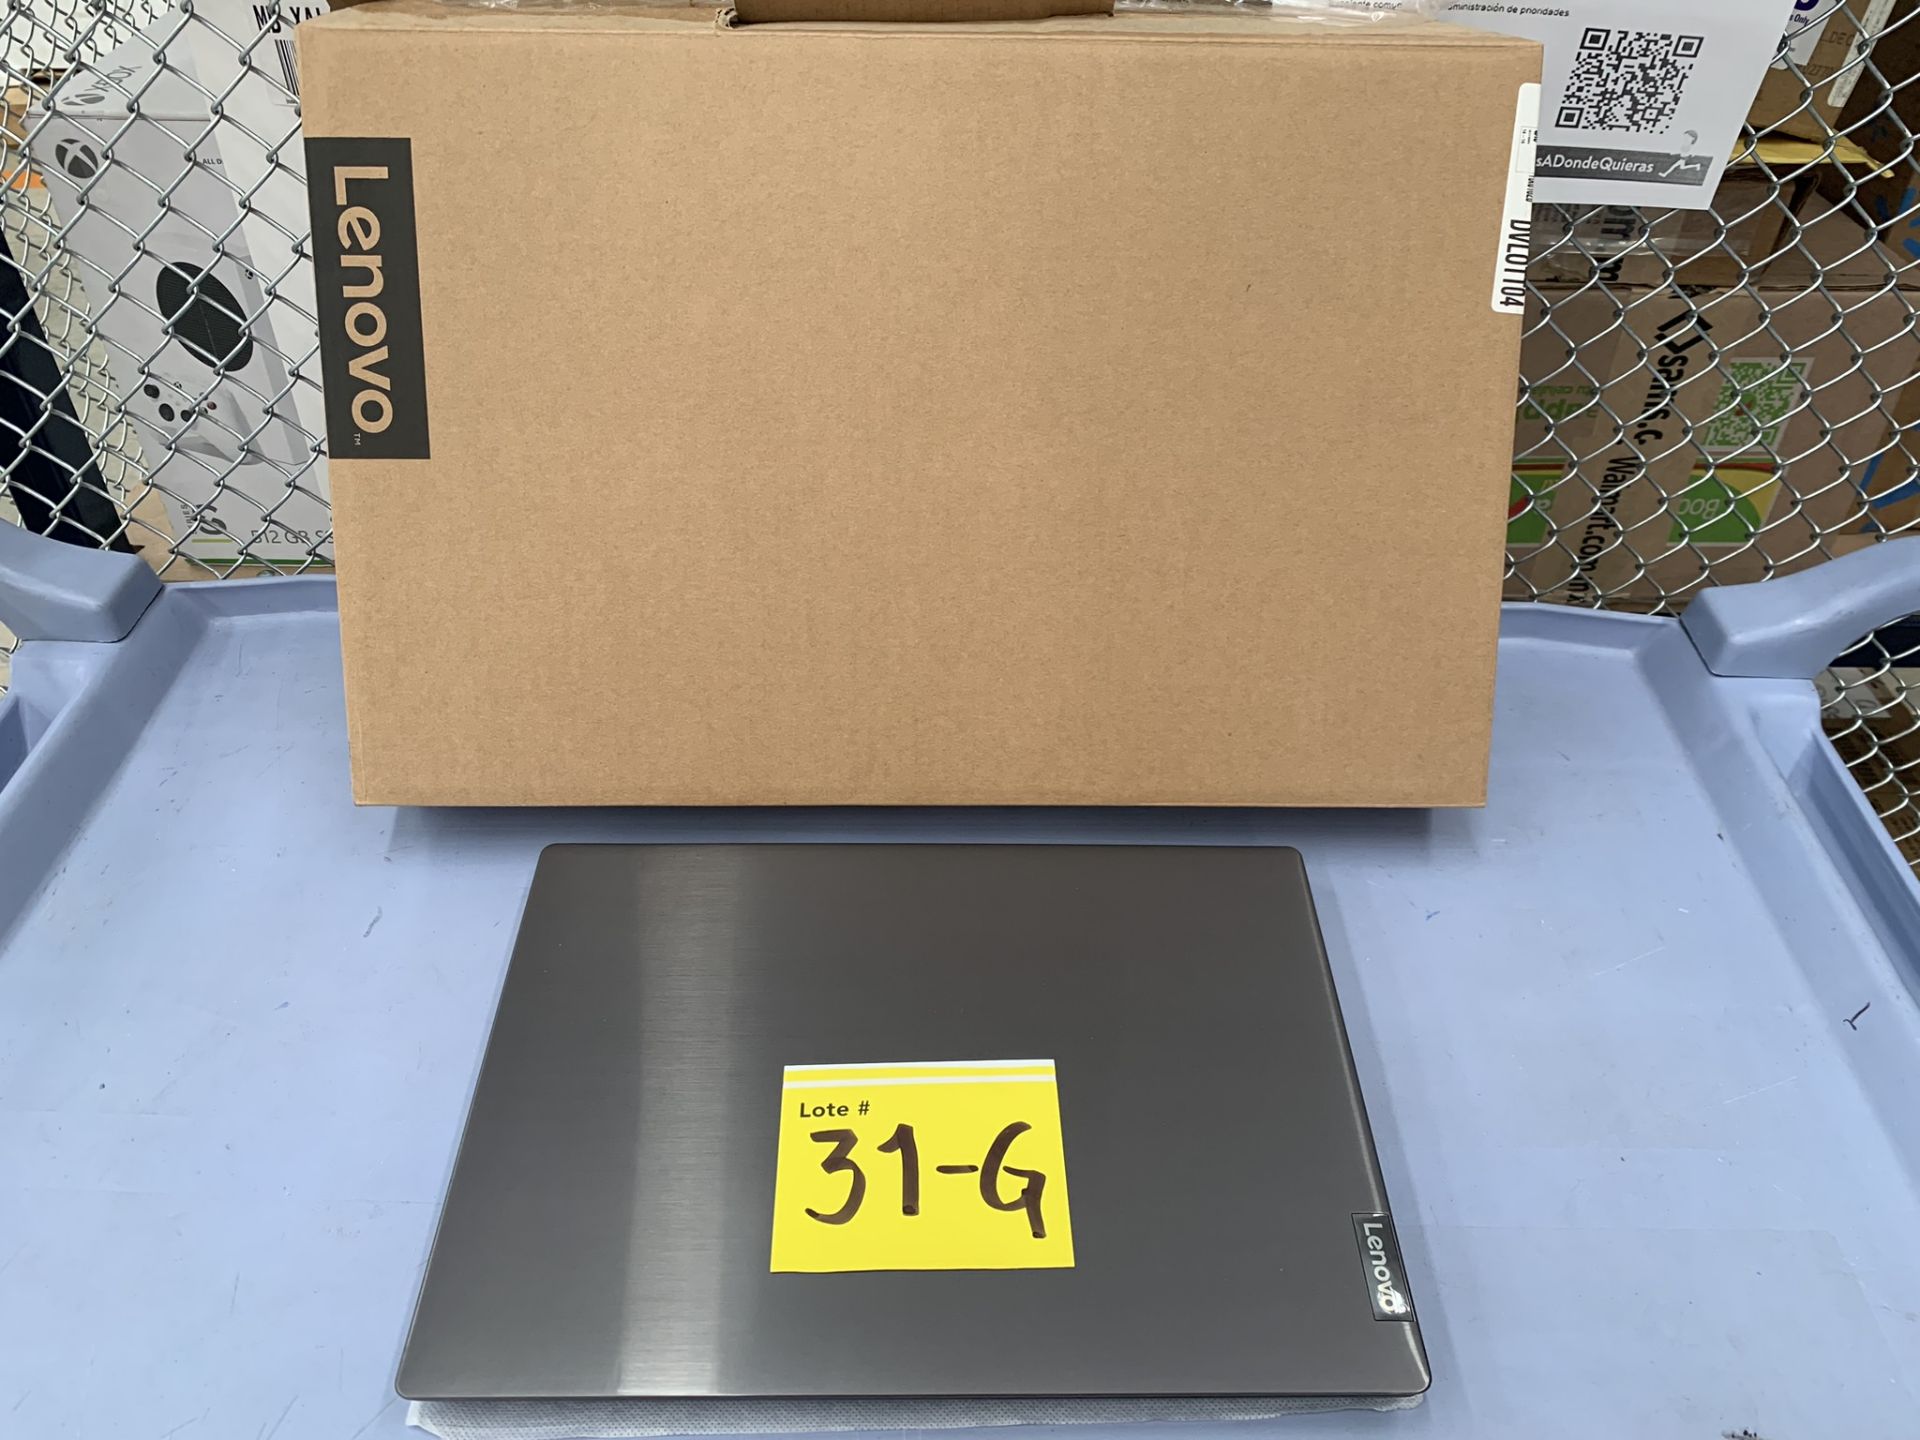 Lote De 2 Laptops Contiene: 1 Laptop Marca Lenovo Modelo 82c6, Serie PF37C7ZK, Color Gris, Proc - Image 2 of 11